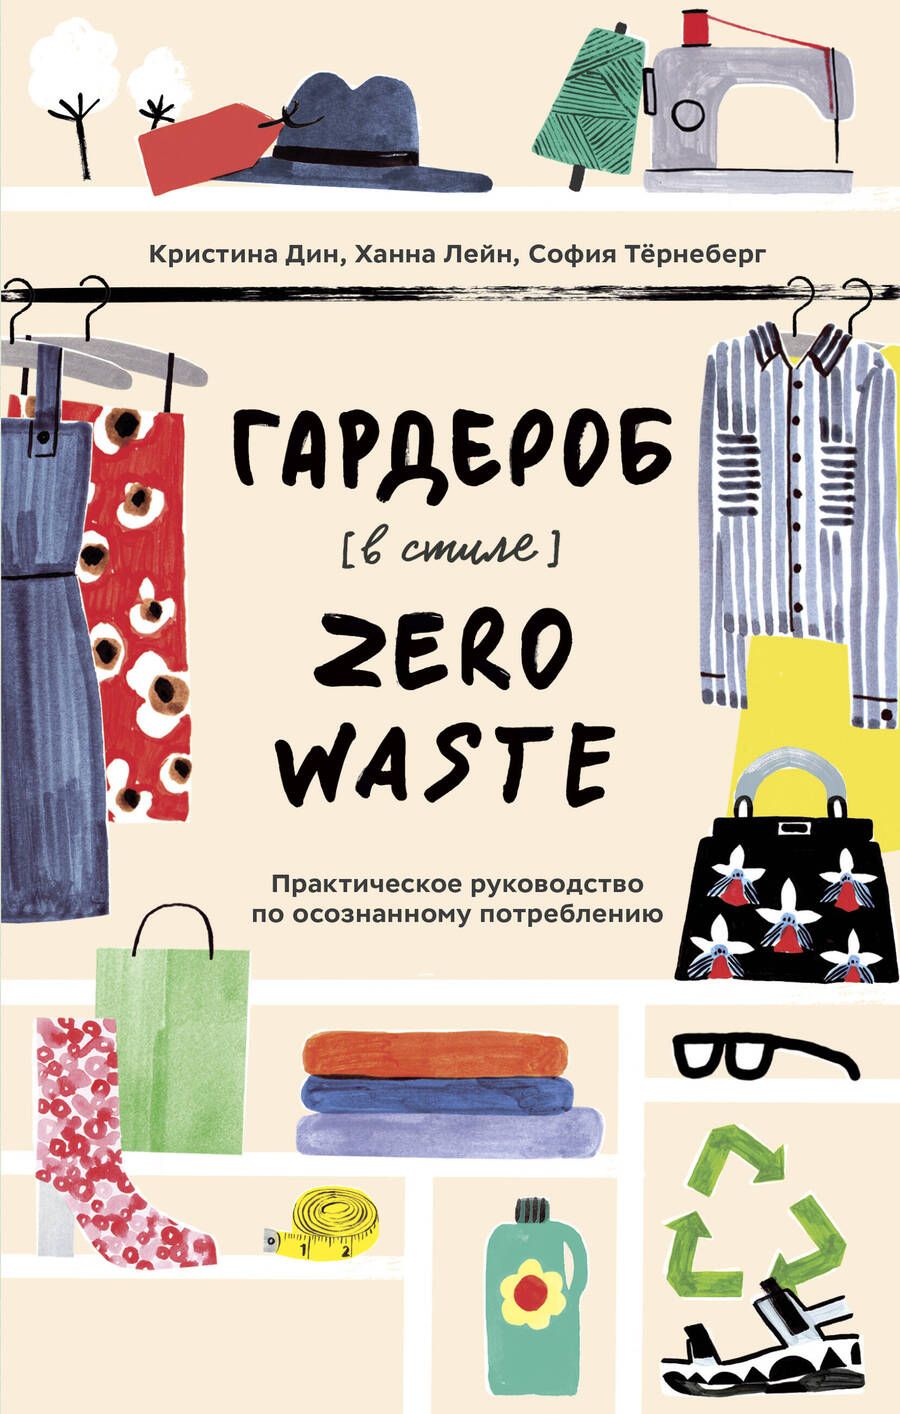 Обложка книги "Дин, Лейн, Тернеберг: Гардероб в стиле Zero Waste. Практическое руководство по осознанному потреблению"